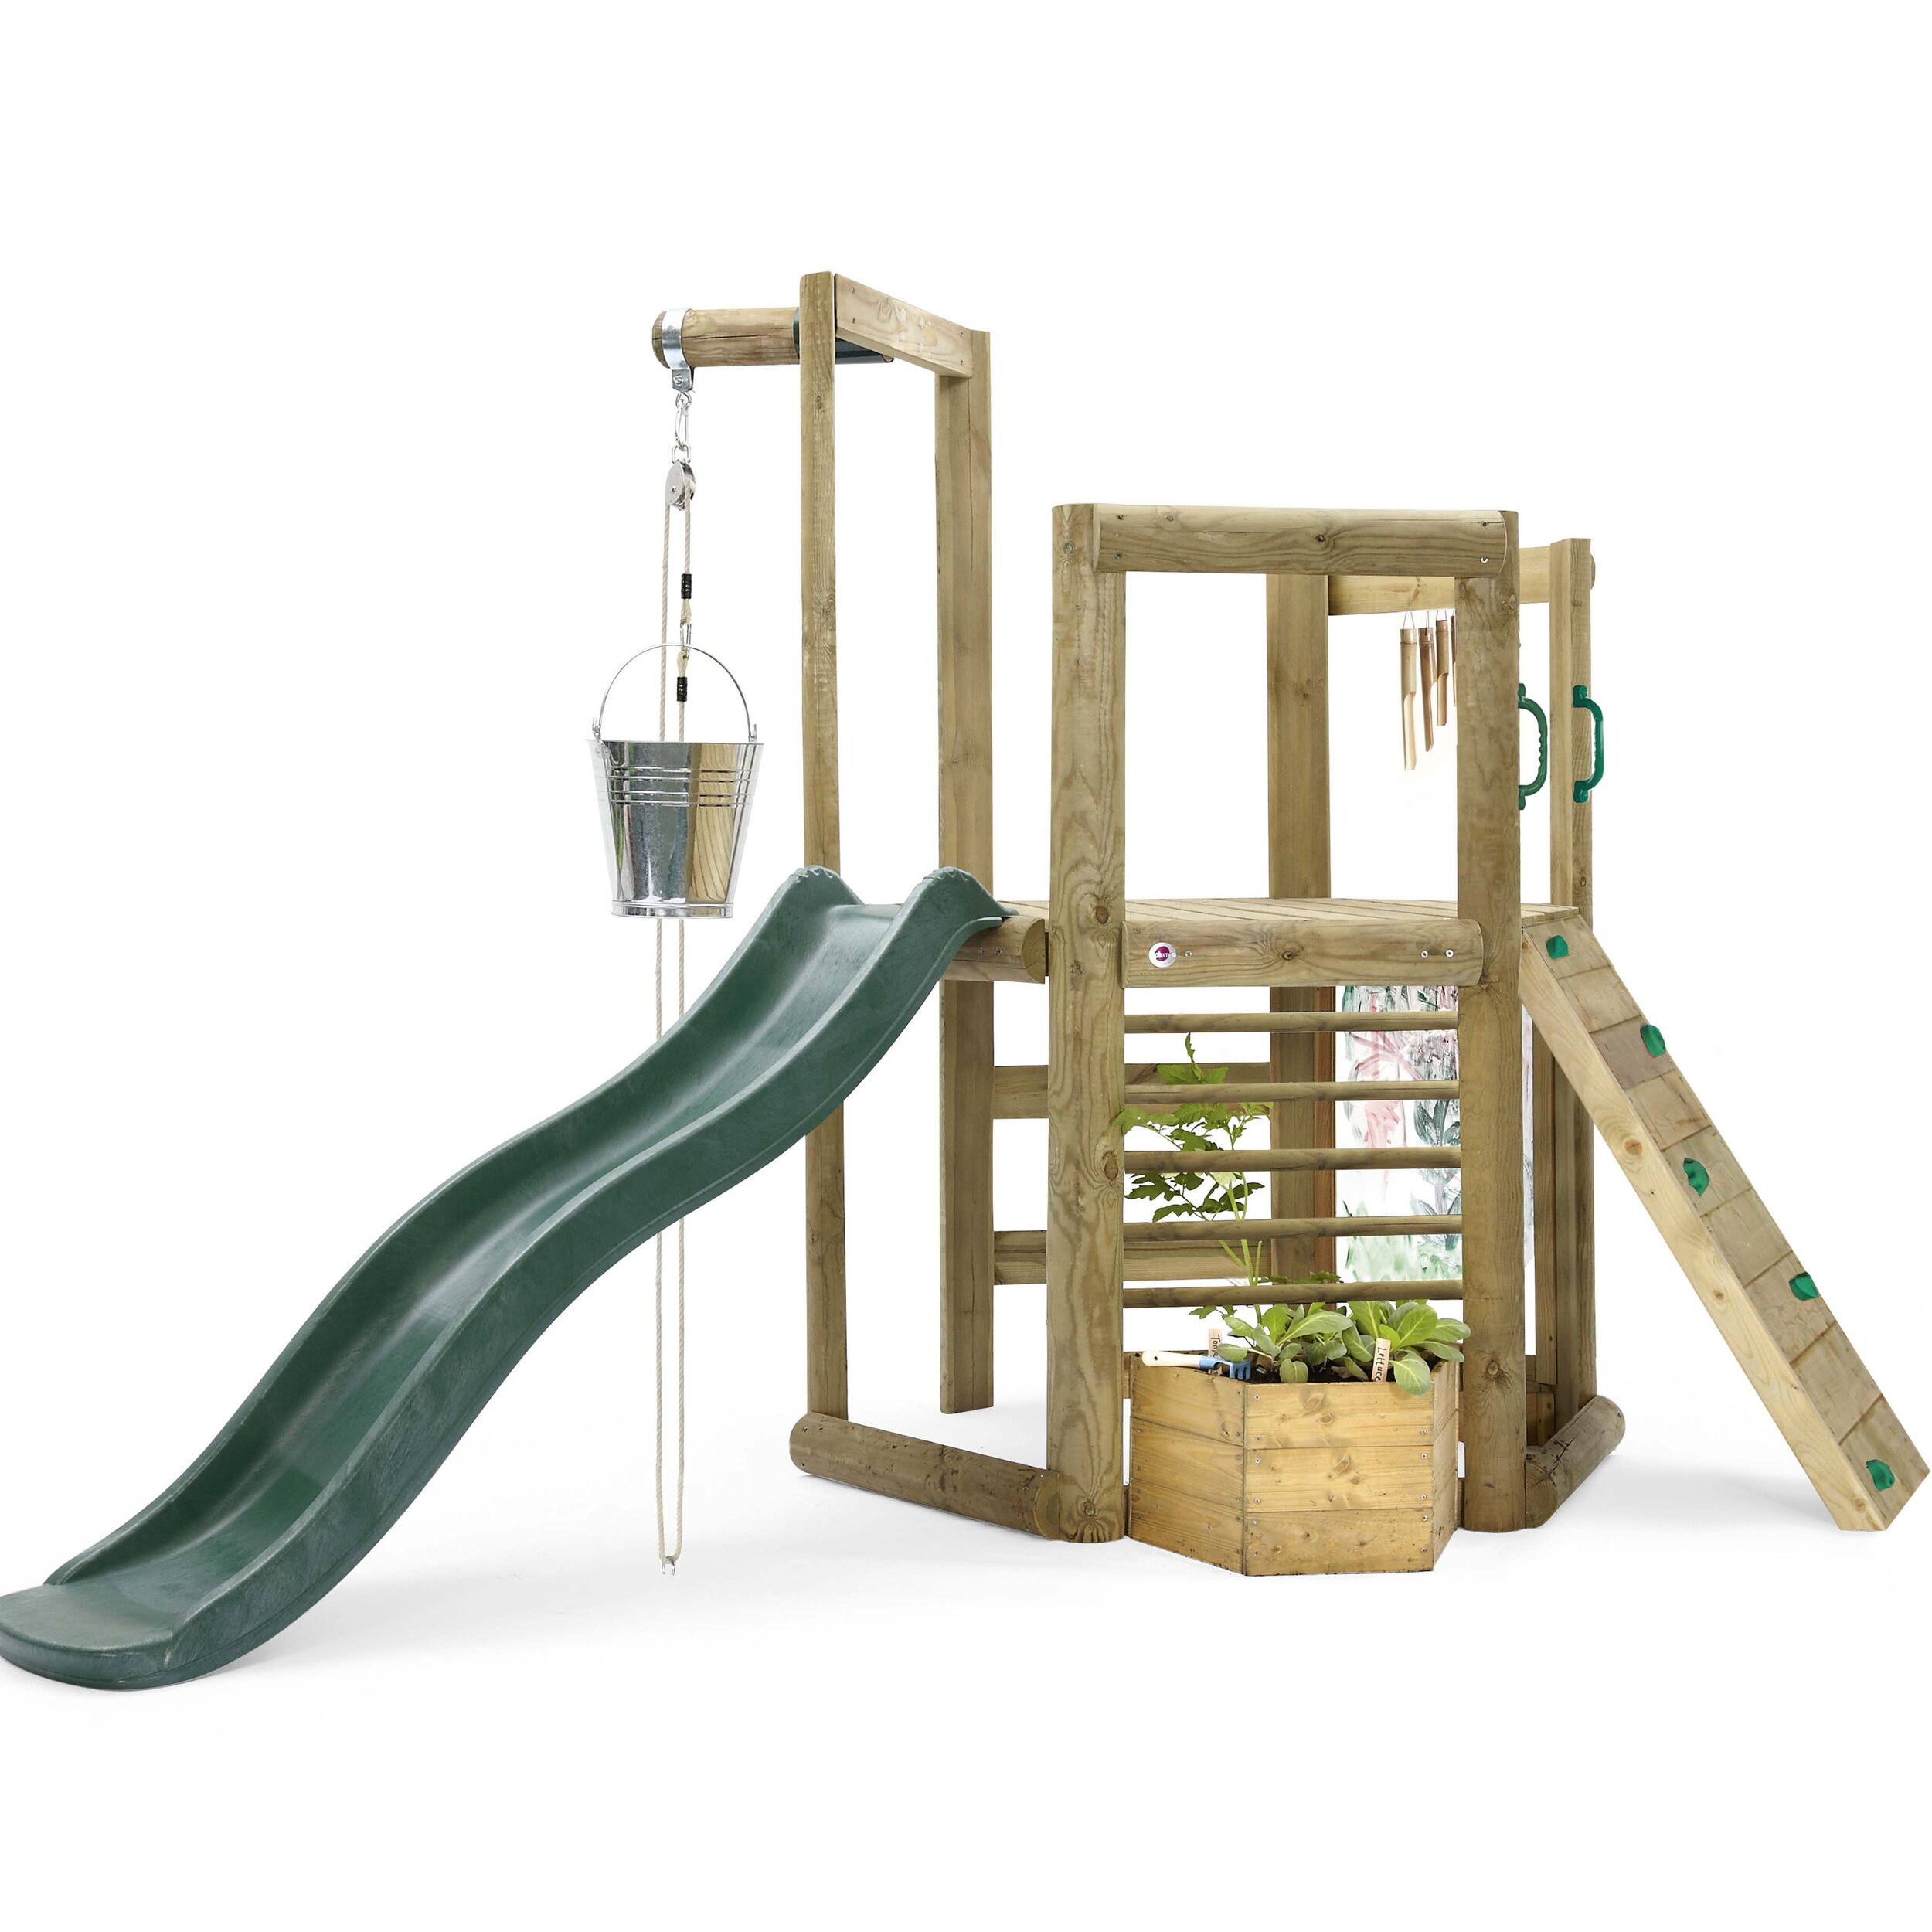 plum-treehouse-playcenter-centro-ecologico-wooden-27622-giochi-esterno-babylove2000-prodotto.jpg